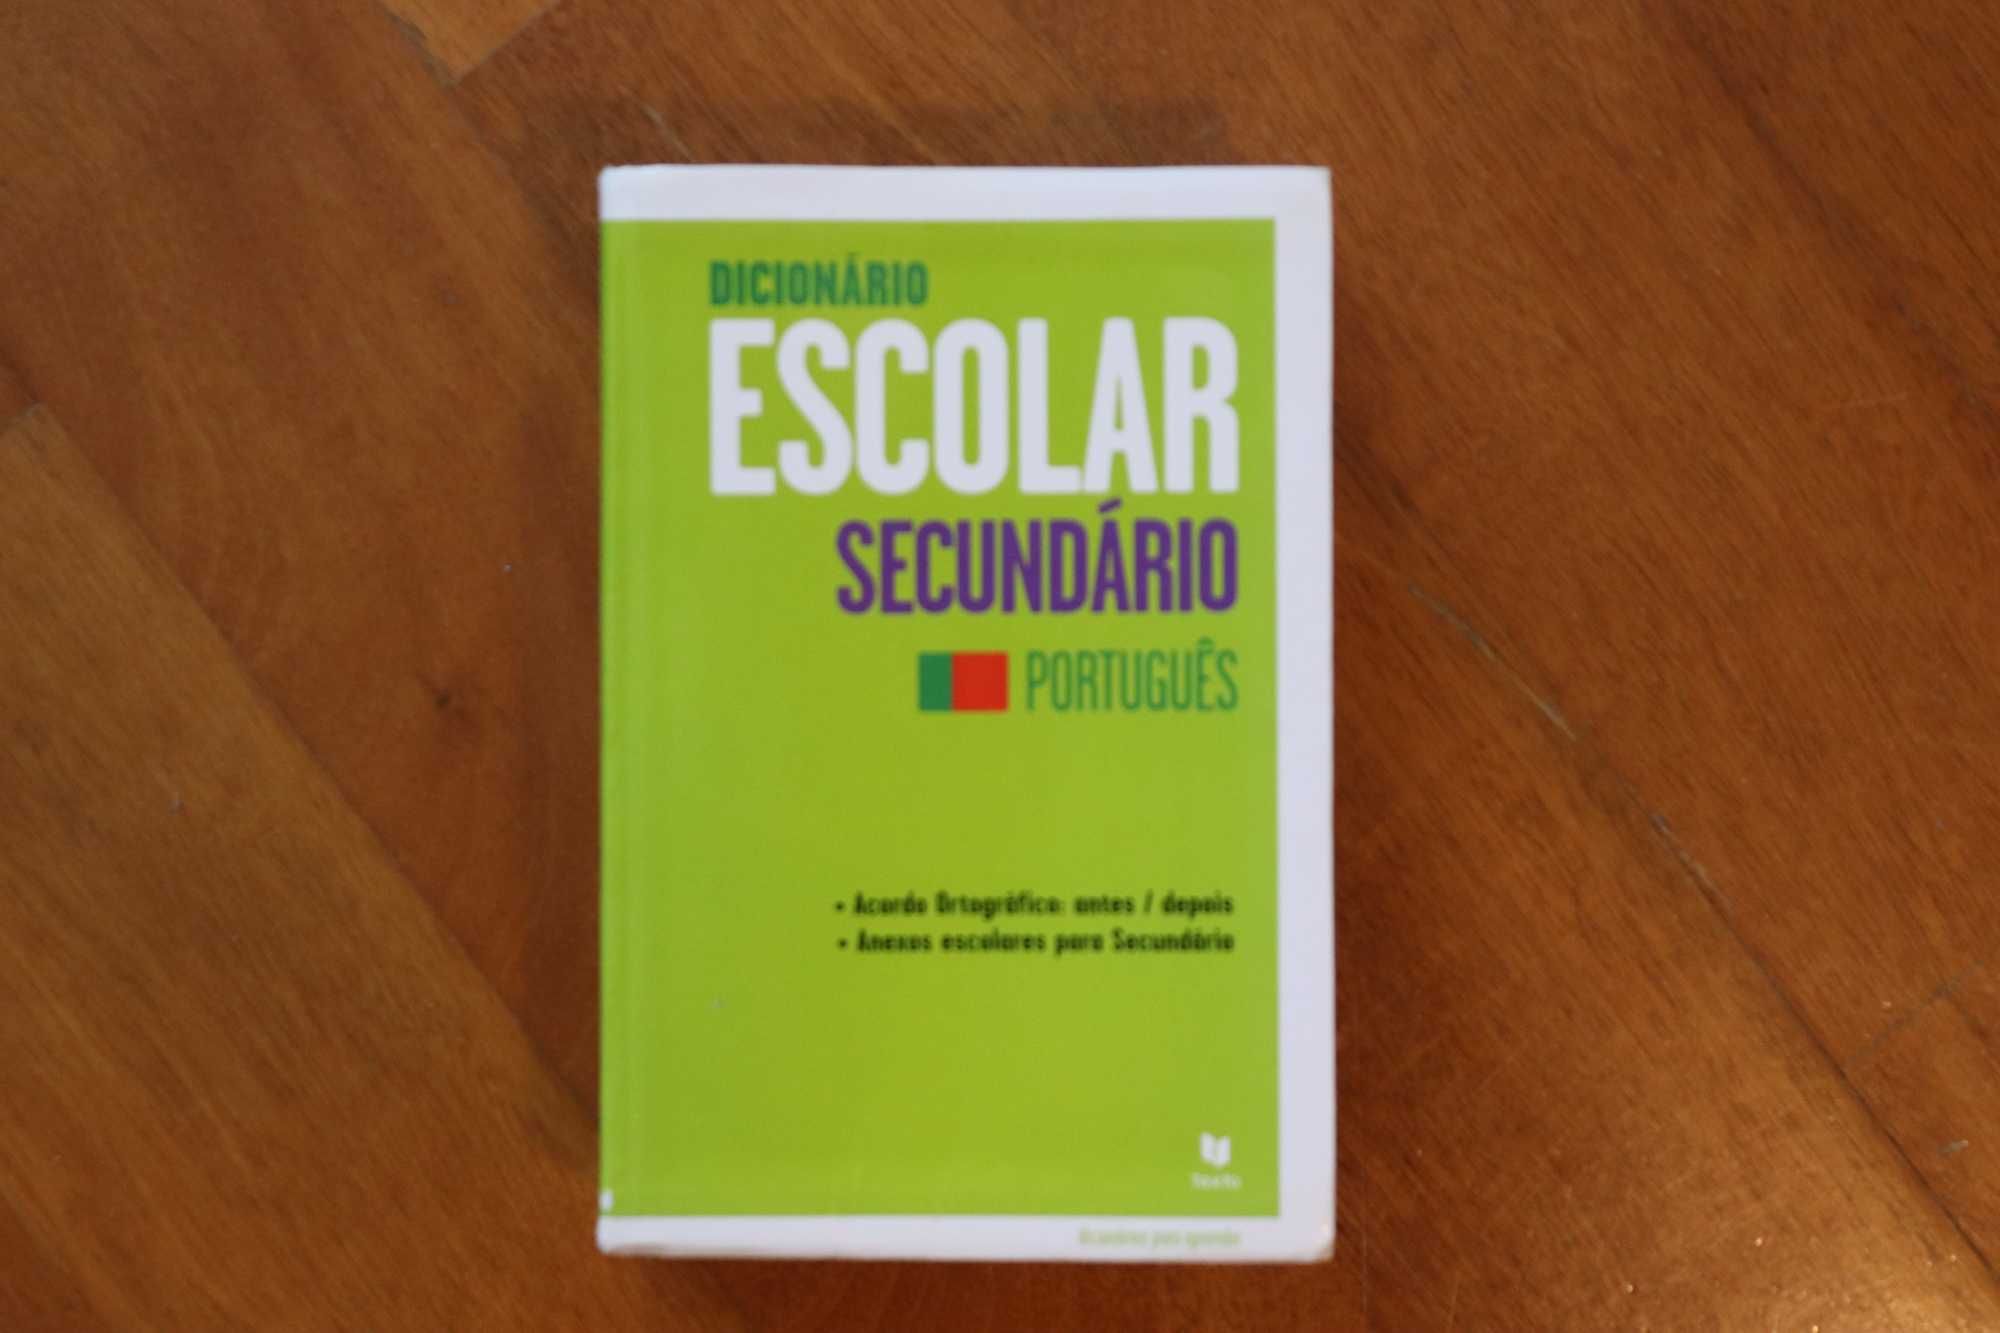 Dicionário Escolar de Português (Secundário)